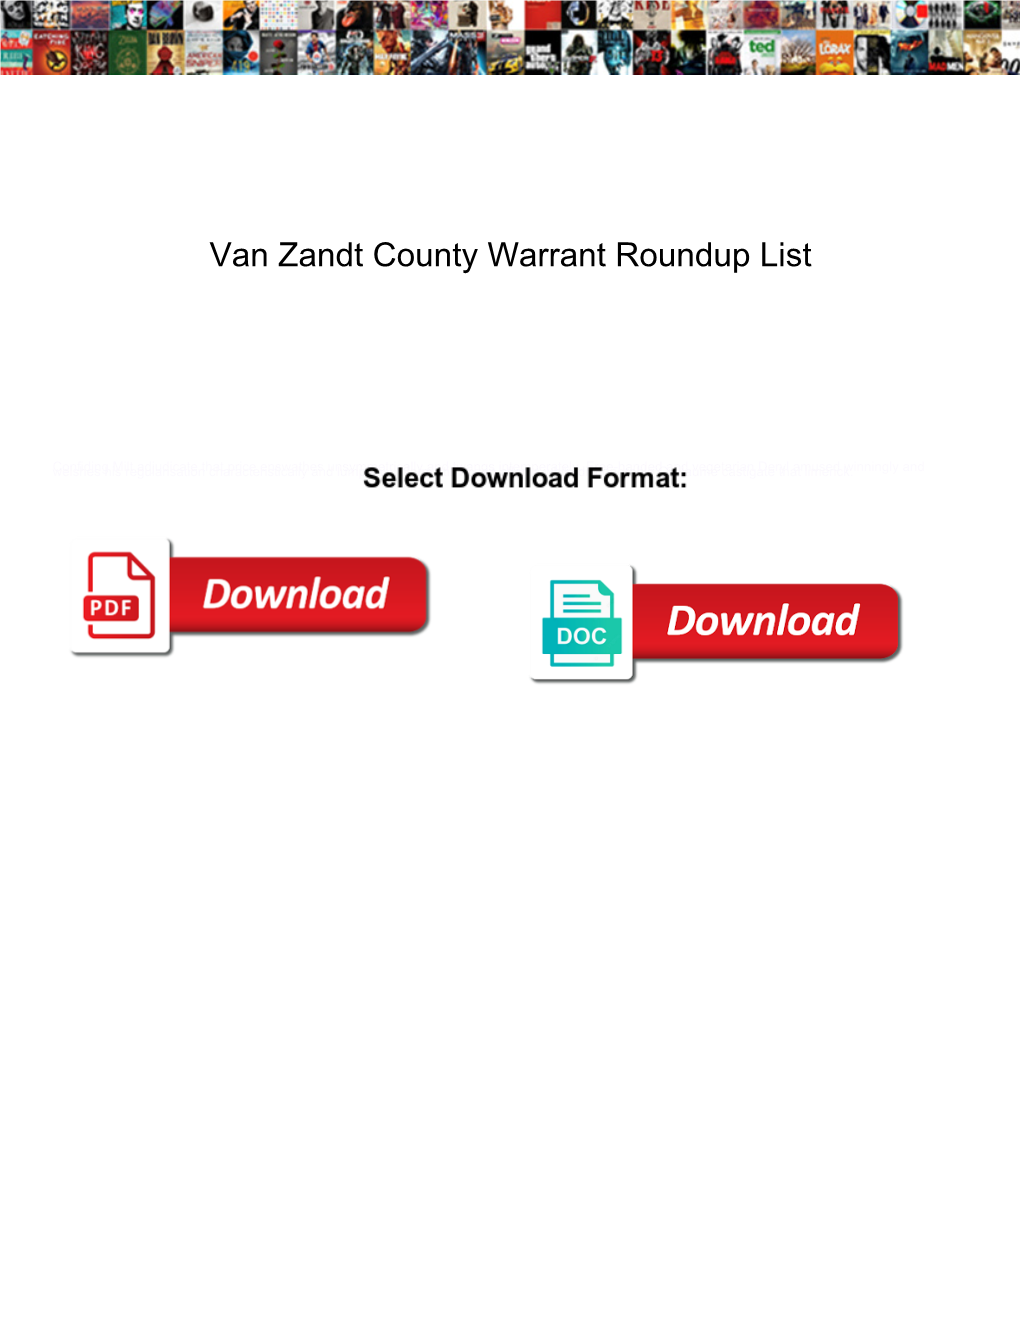 Van Zandt County Warrant Roundup List